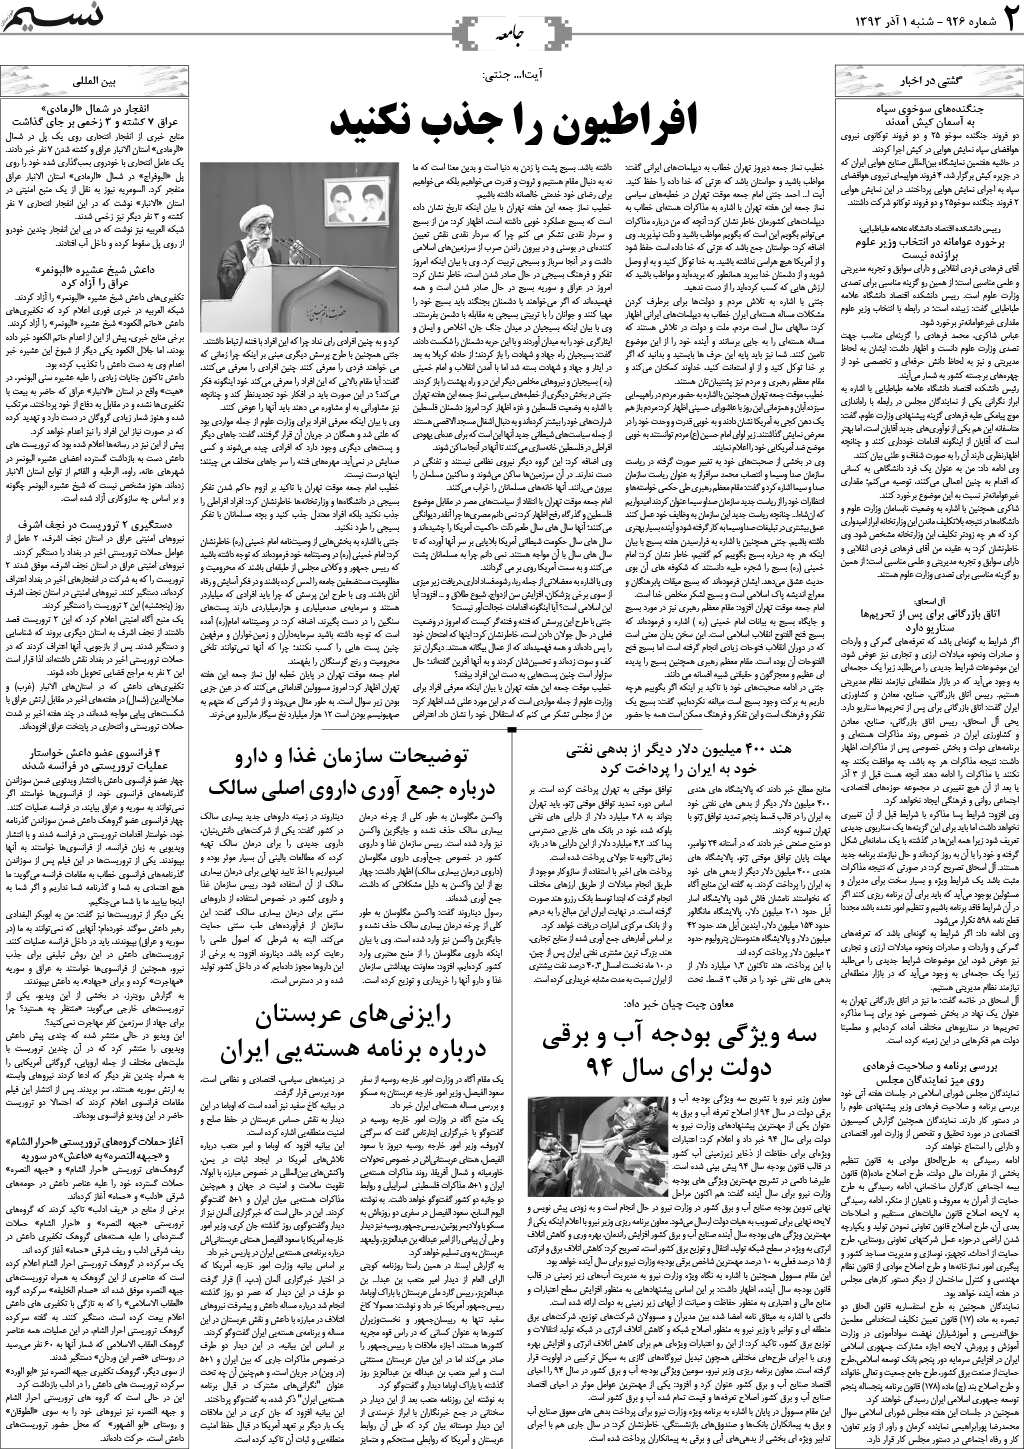 صفحه جامعه روزنامه نسیم شماره 926